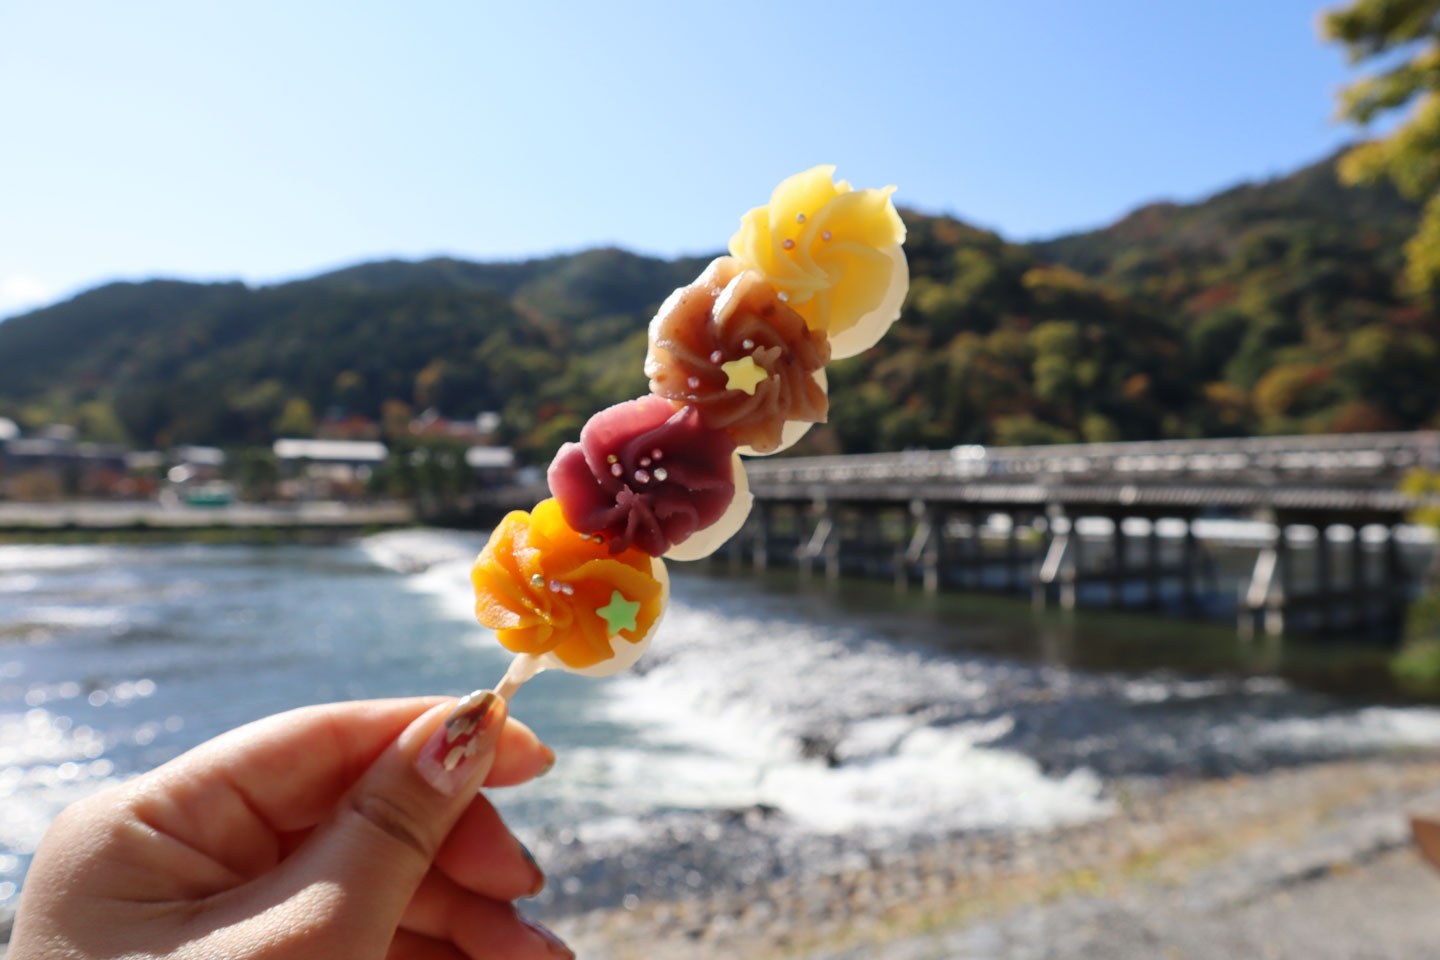 嵐山の食べ歩きおすすめグルメ19選!  京都観光でグルメを堪能